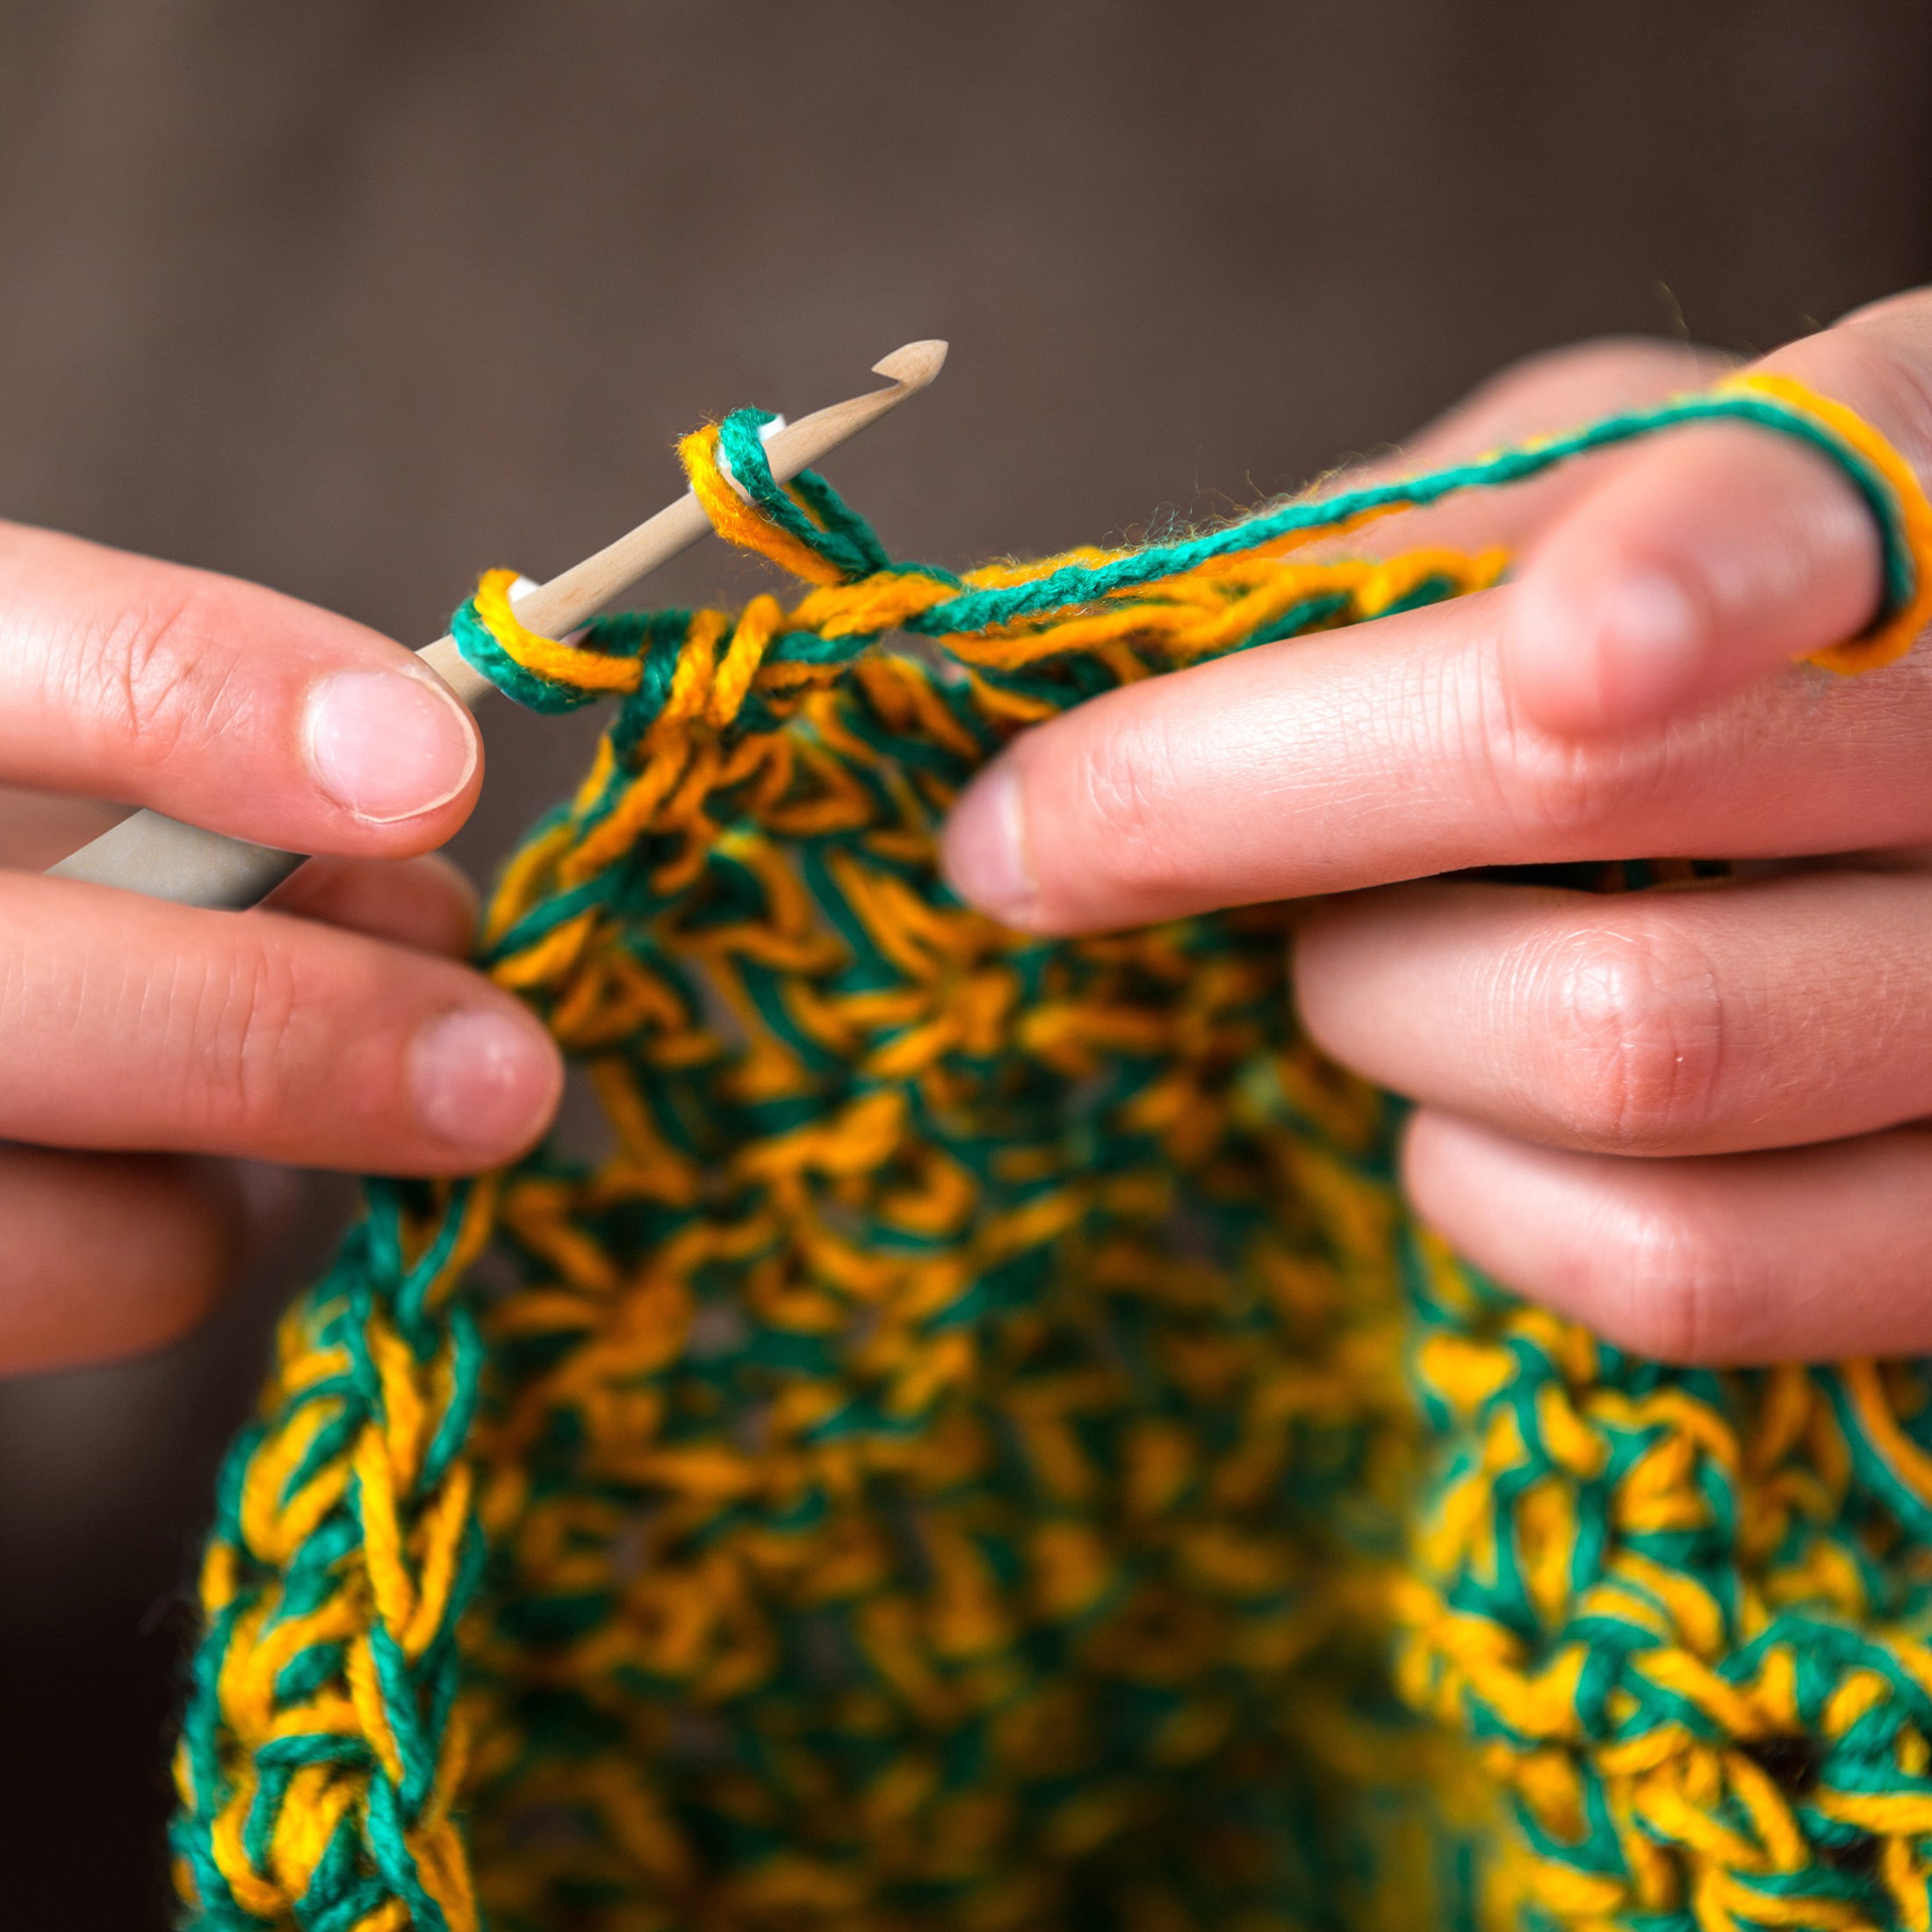 ommi crochet NW201594780804311589 Ommi Ergonomic Handle Crochet Hooks  Handcrafted 7Aa Crochet Hook Knitting Needle, Craft Yarn Weave Best Gift  (Purple, 5 Mm)